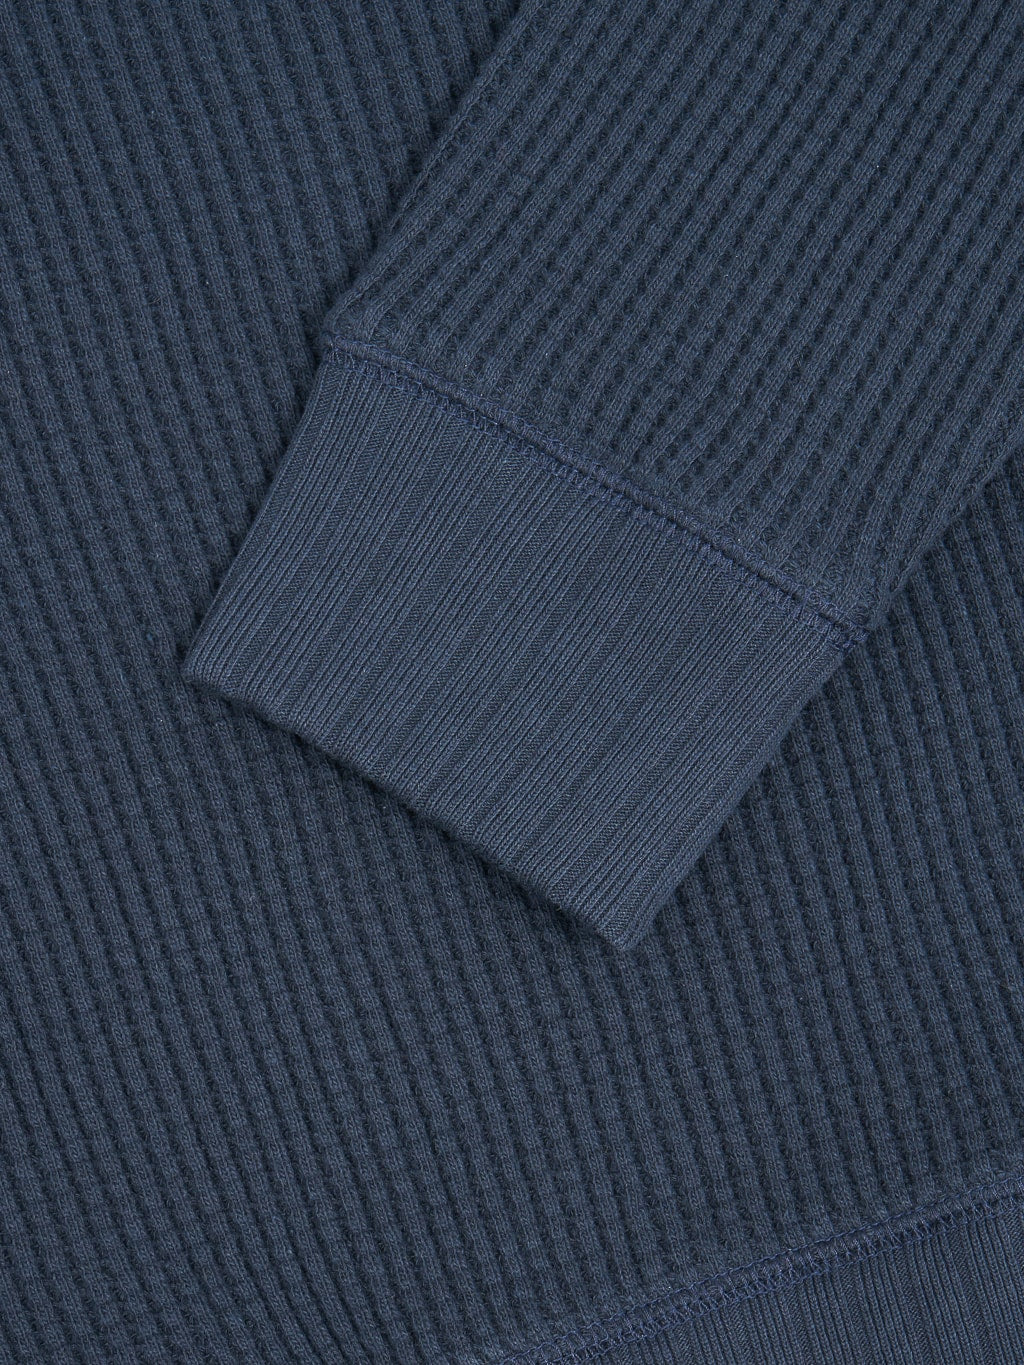 Jackman Waffle Midneck Sweater Dark Navy cuff cotton detail